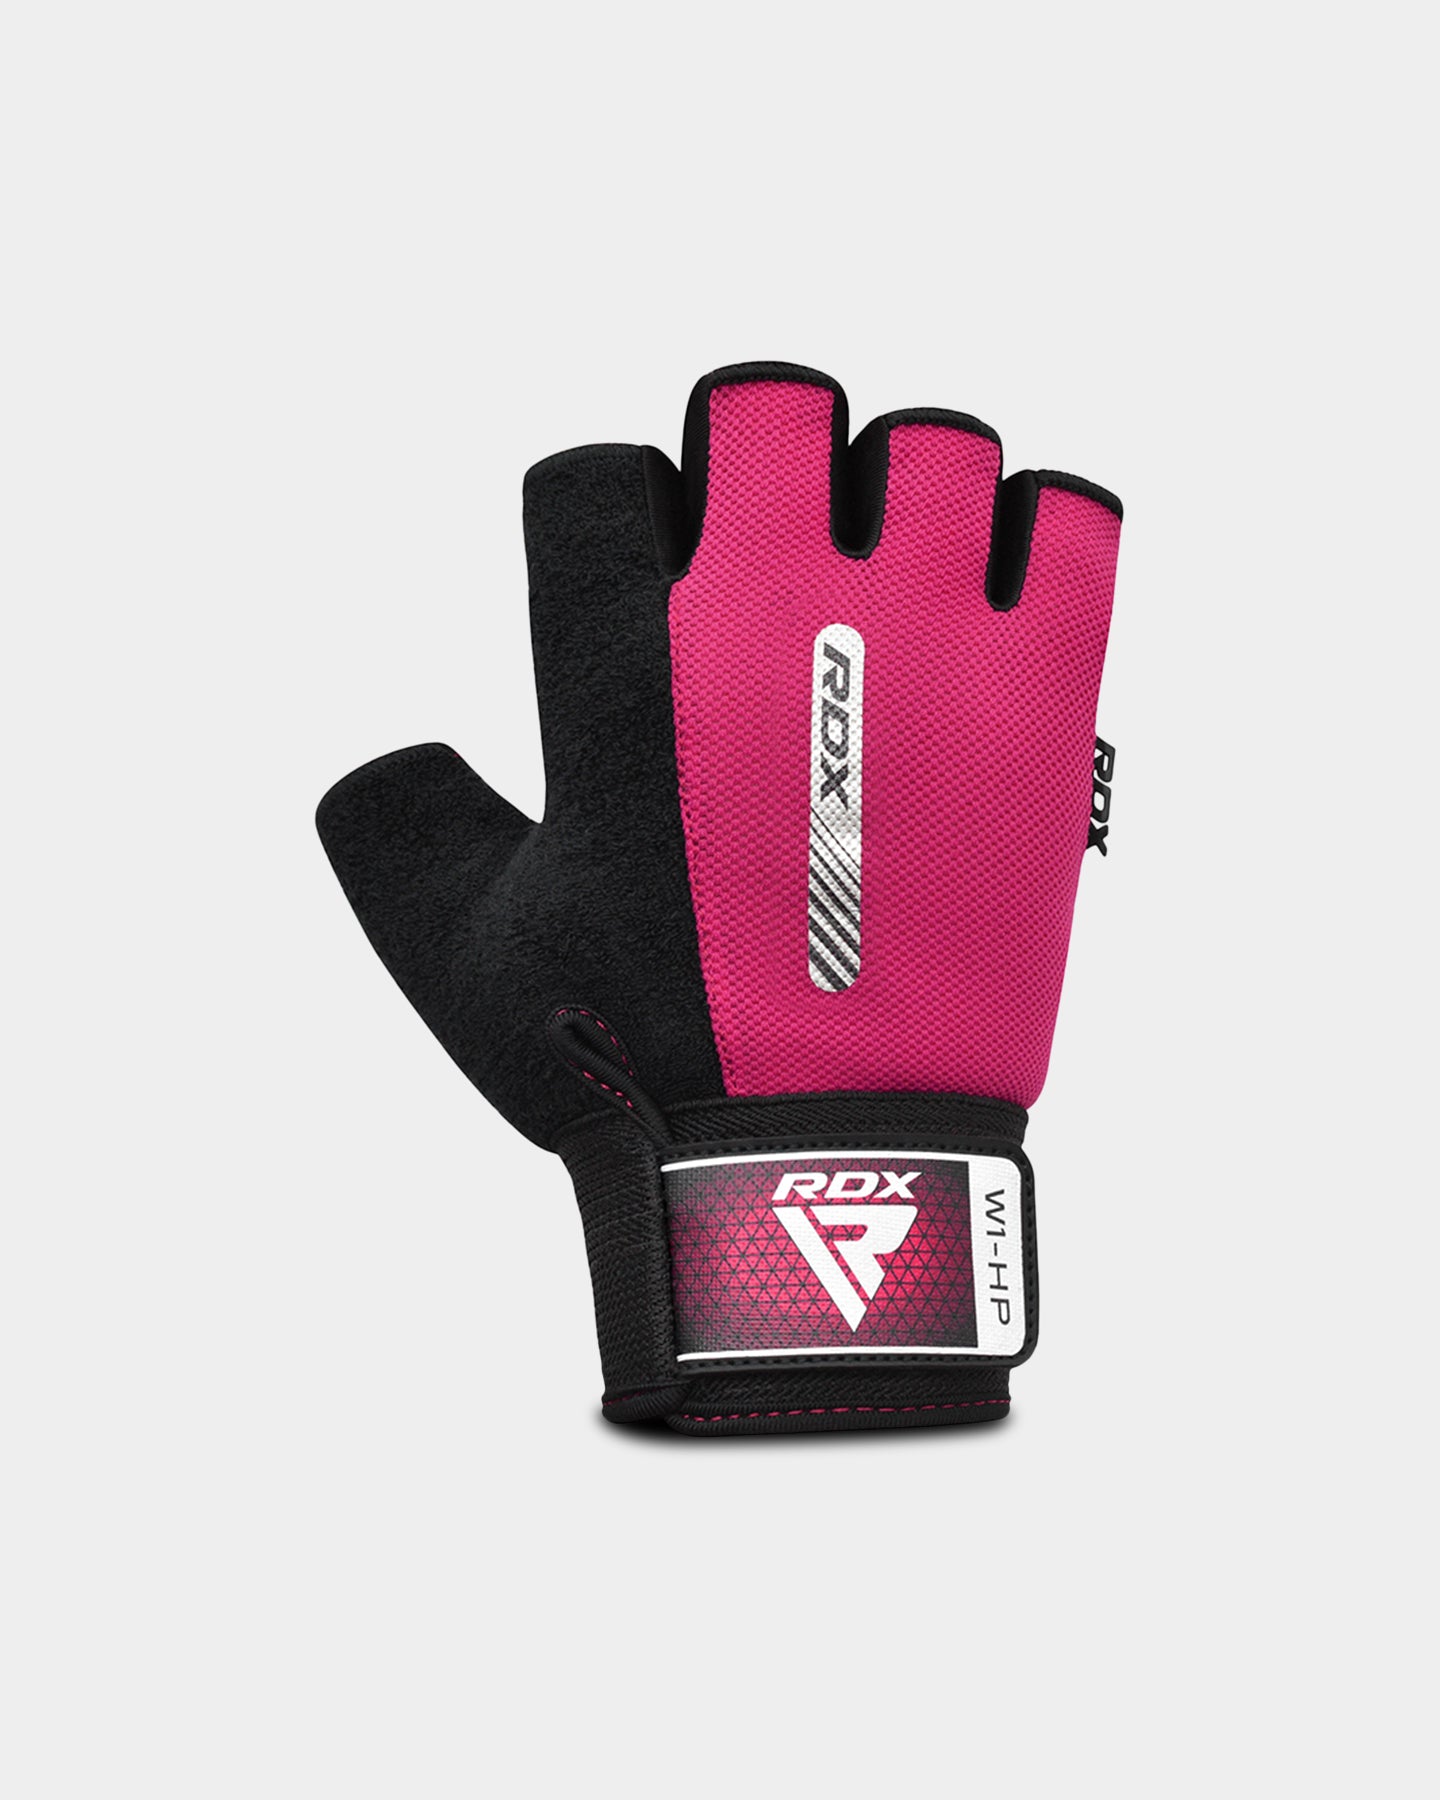 RDX Sports W1 Gym Workout Gloves, L, Pink A2